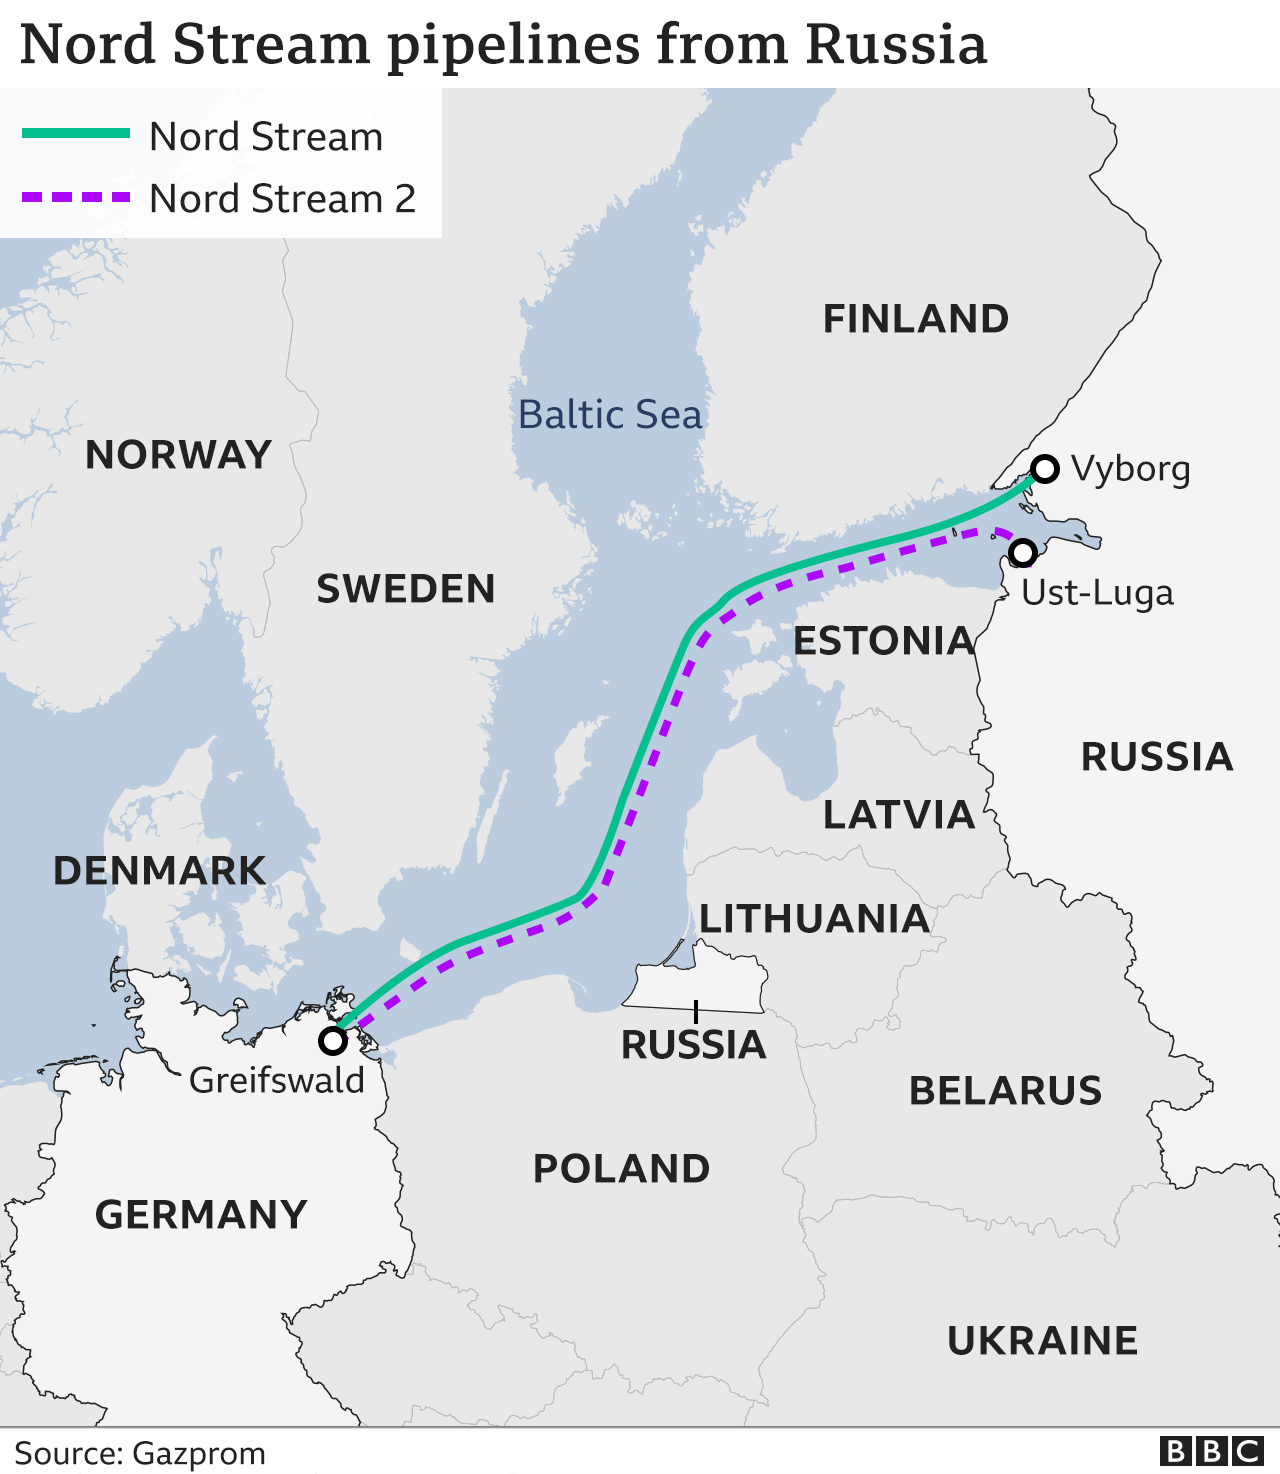 Mapa que muestra la ruta de los gasoductos Nord Stream entre Rusia y Alemania.